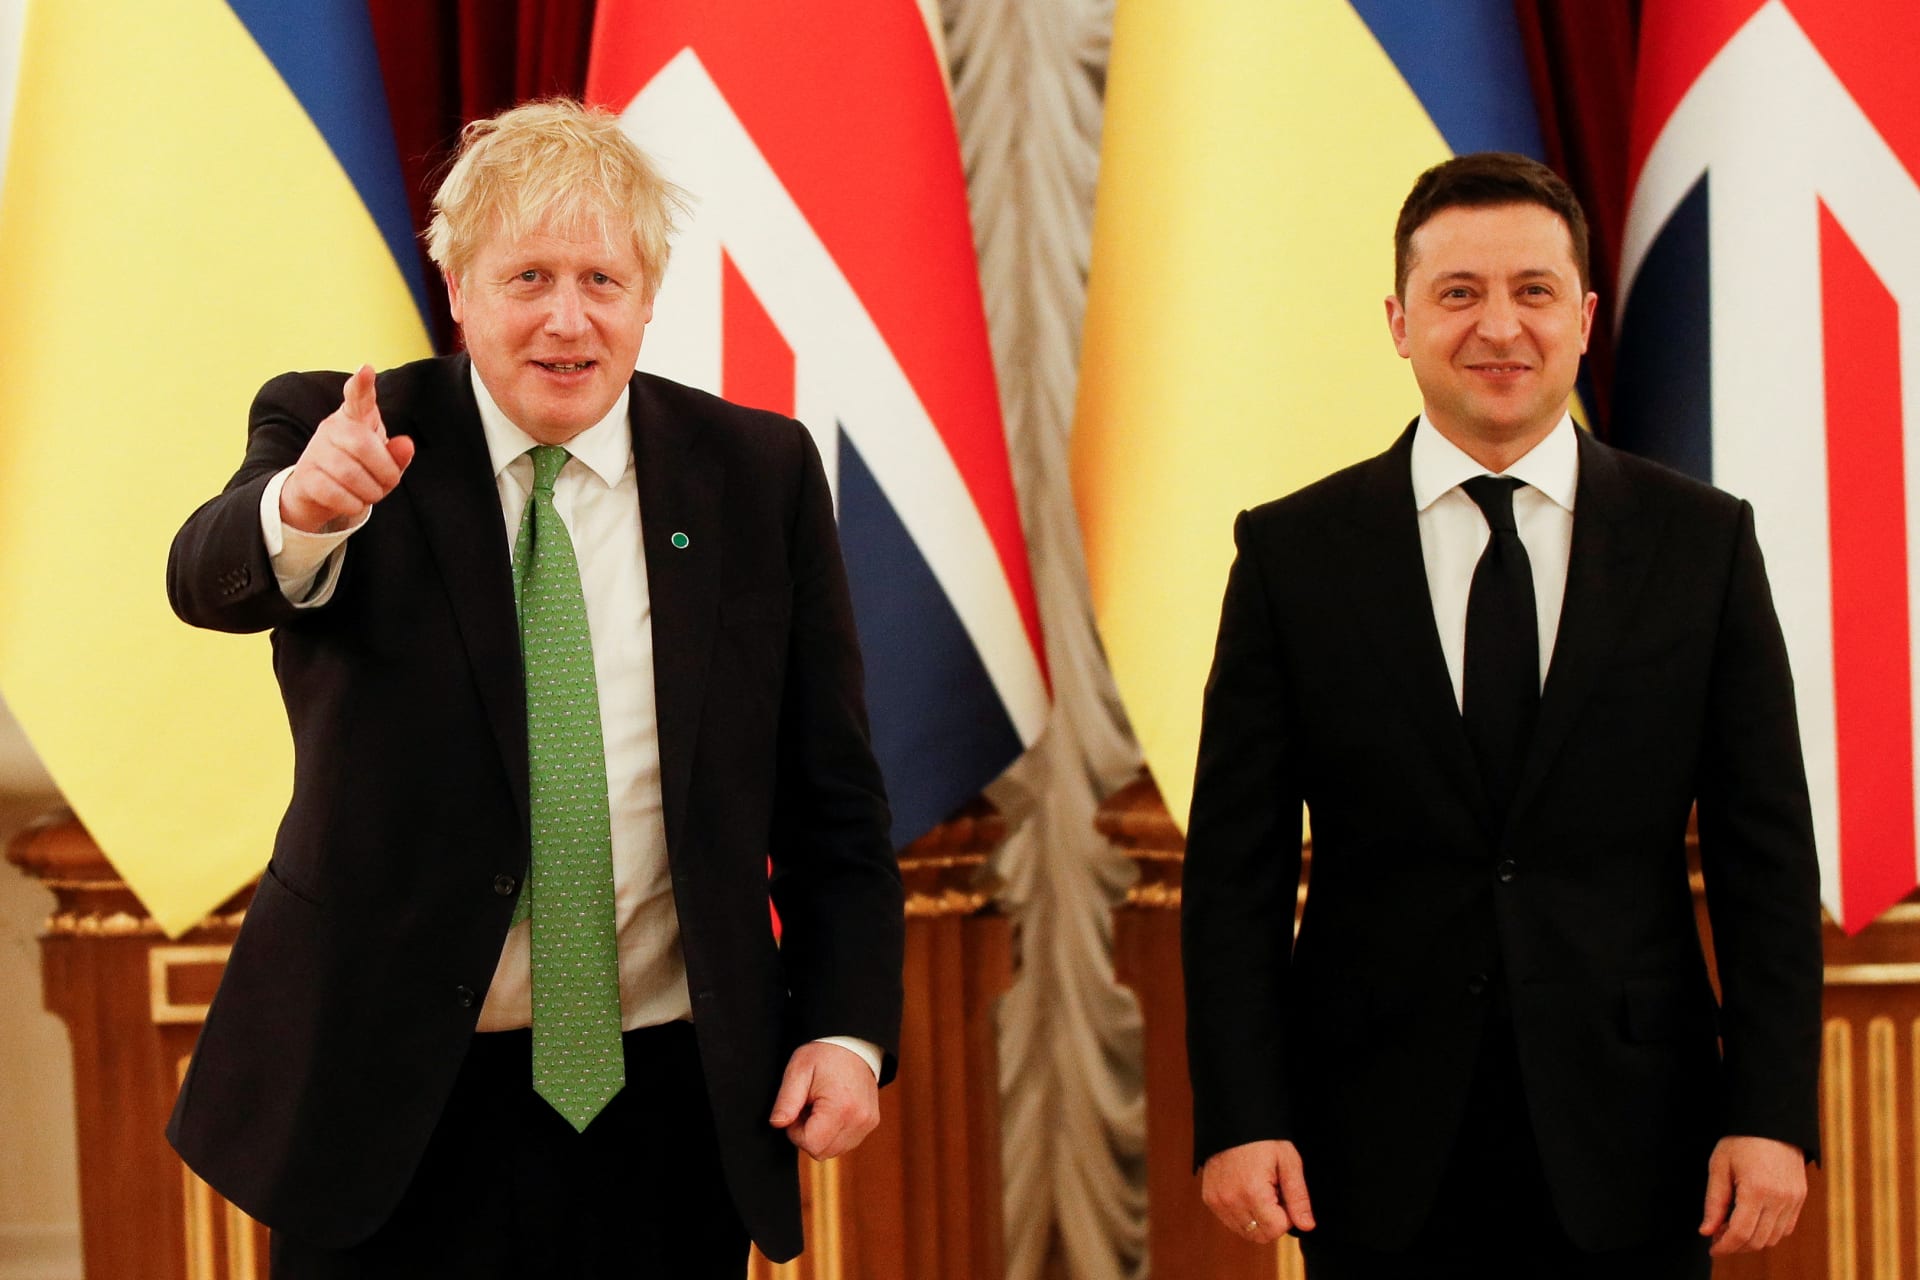 Britský premiér Boris Johnson a ukrajinský prezident Volodymyr Zelenskyj